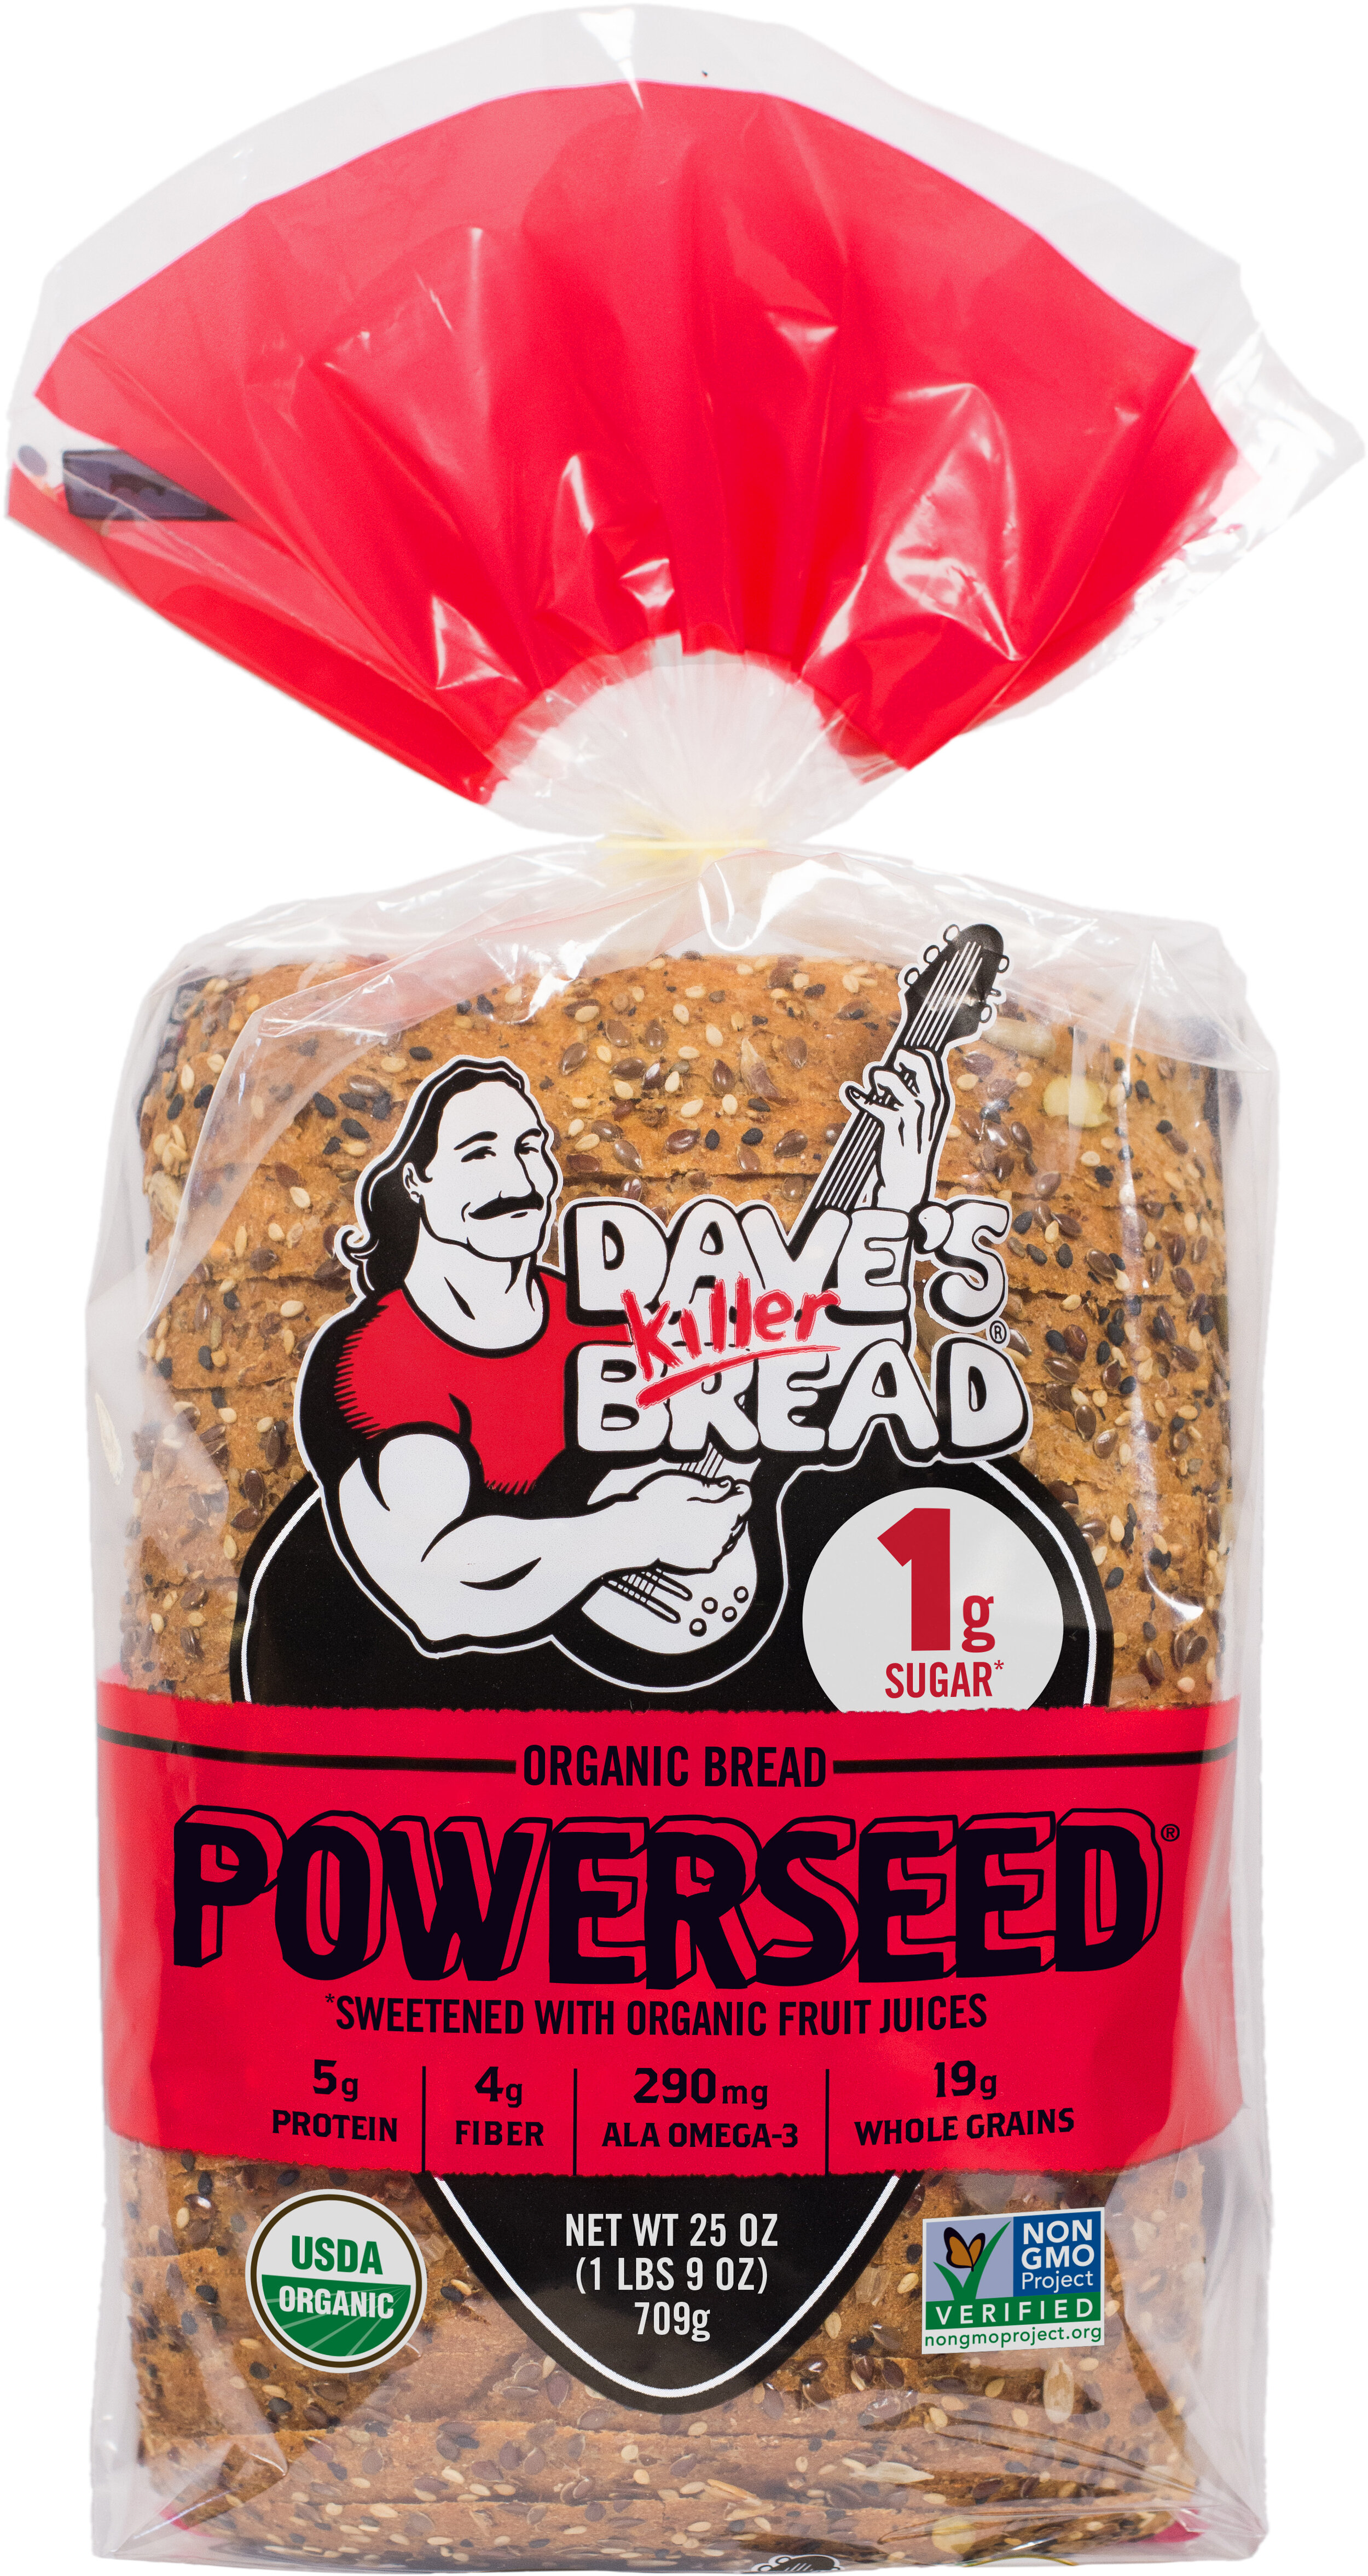 35-dave-s-killer-bread-nutrition-label-labels-database-2020